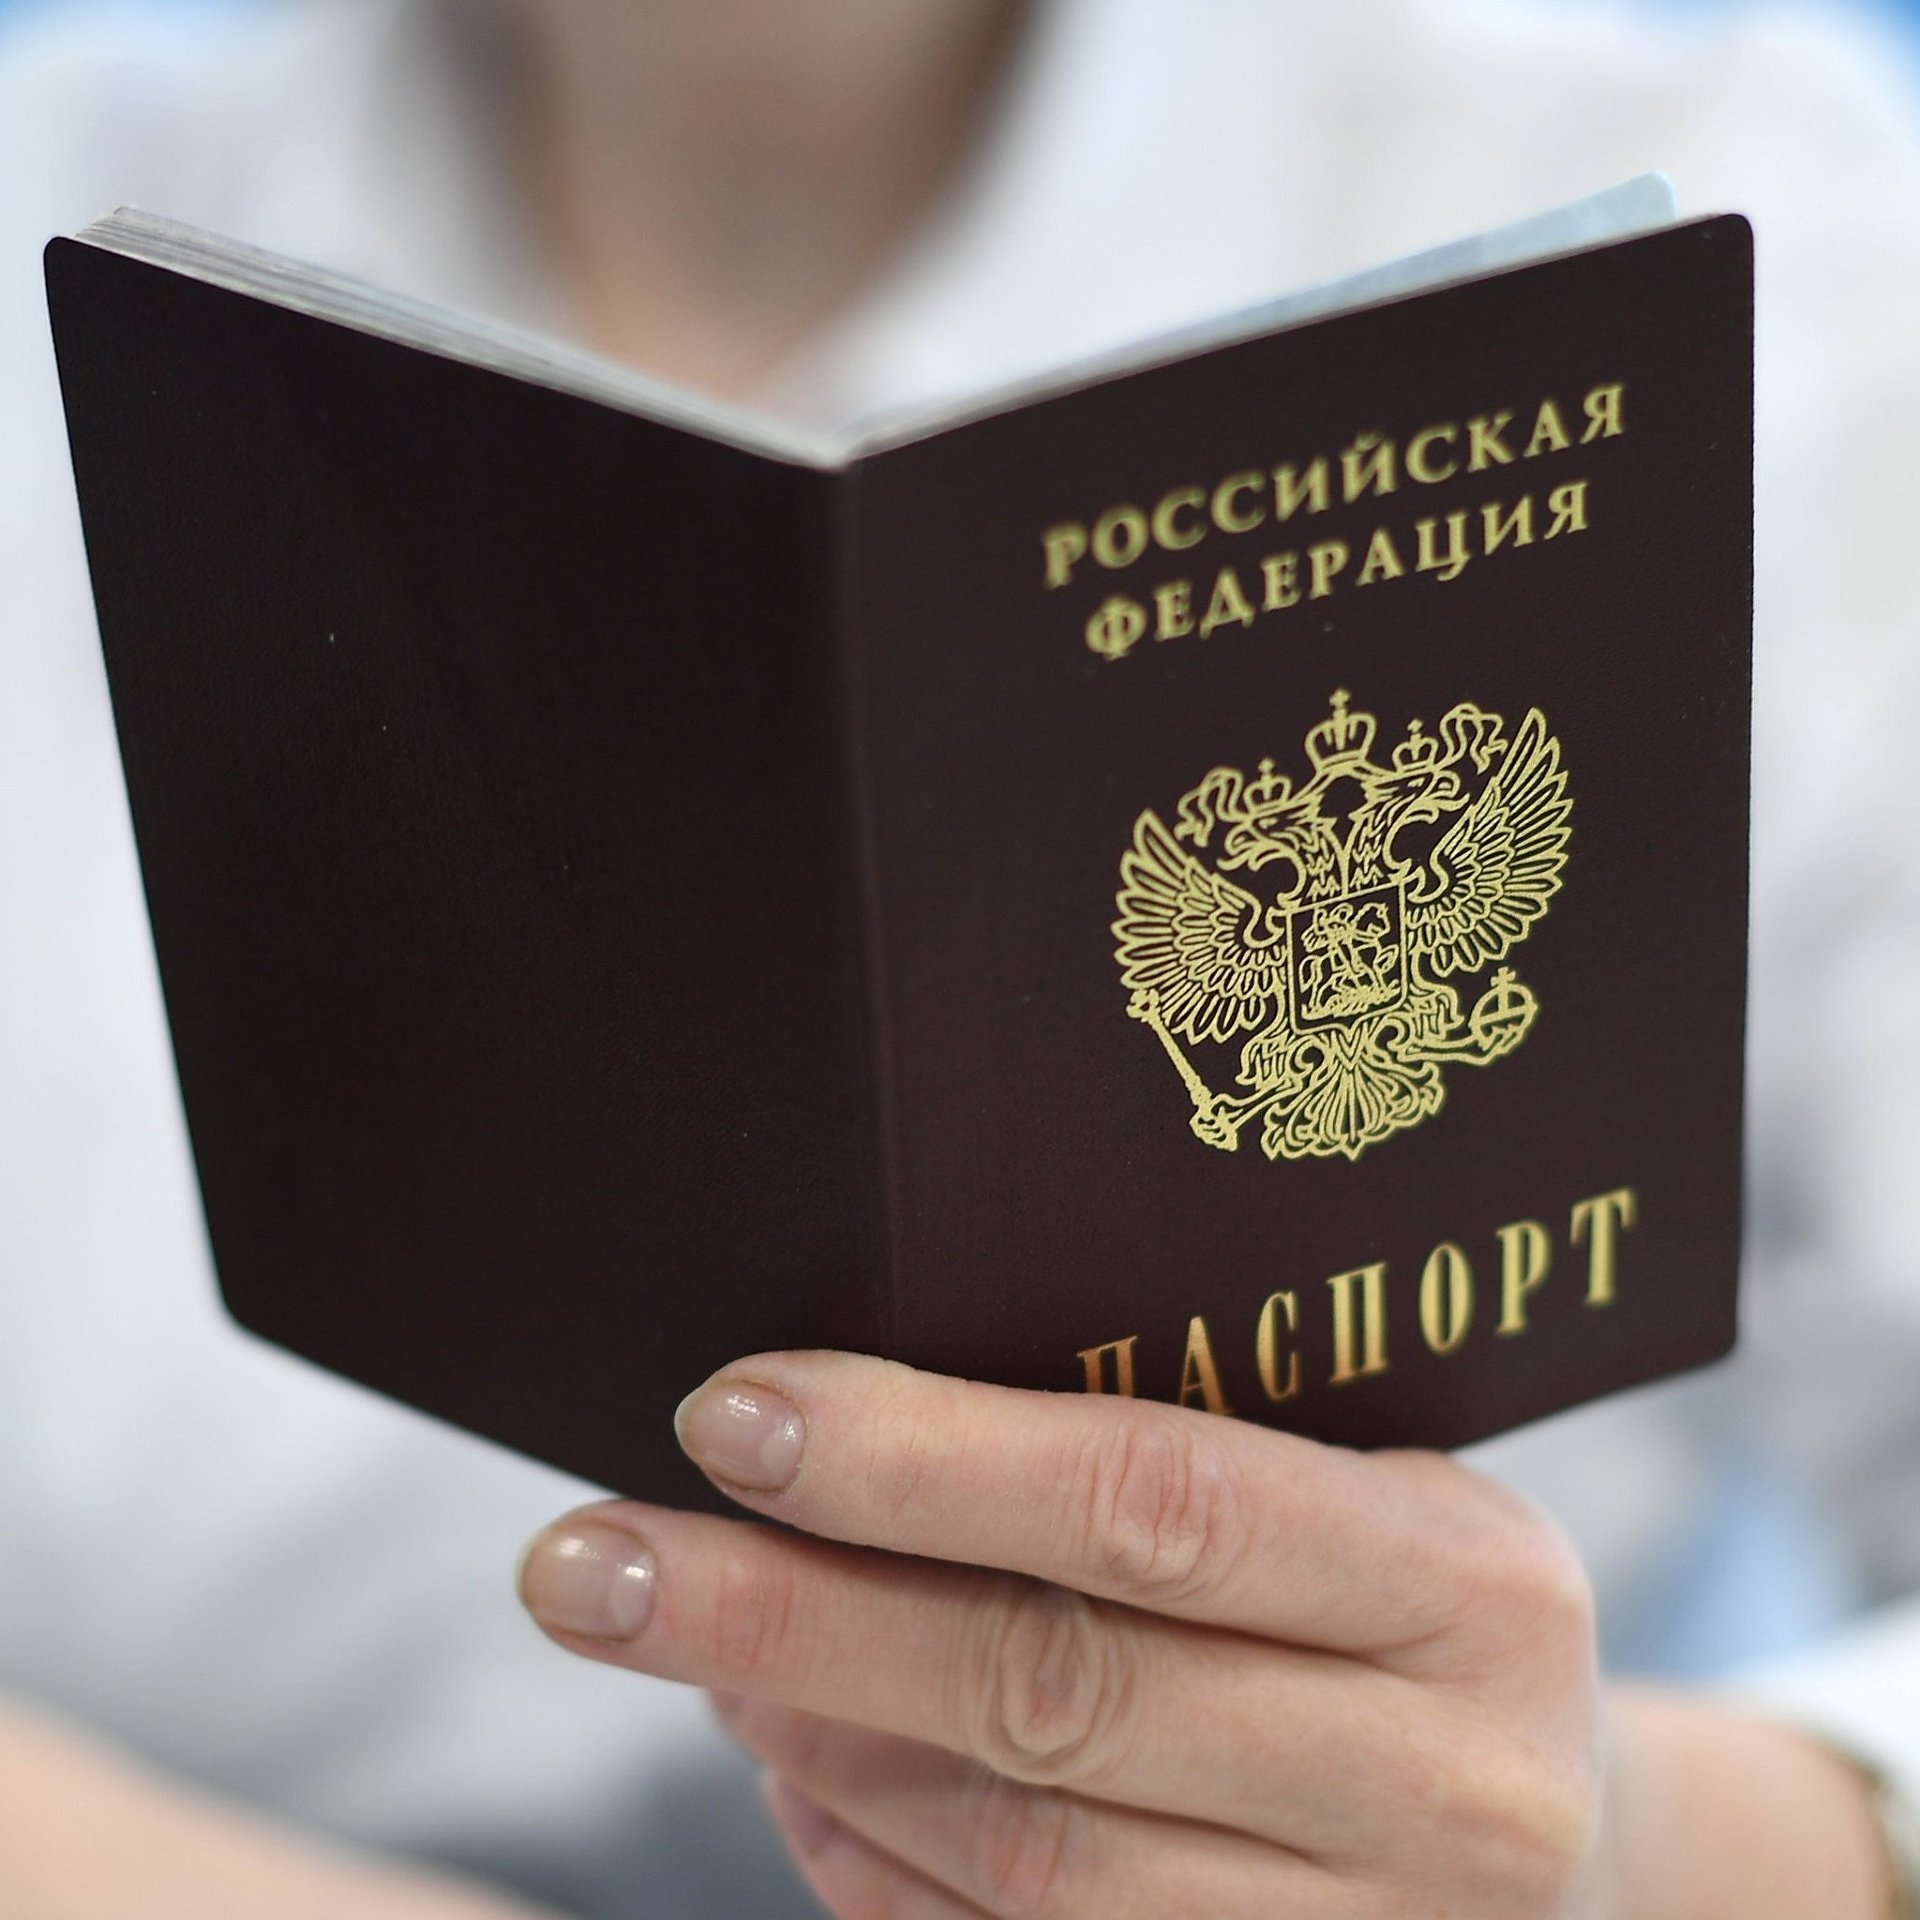 Получить кредит по копии паспорта займ легко и быстро деньги онлайн на карту без проблем